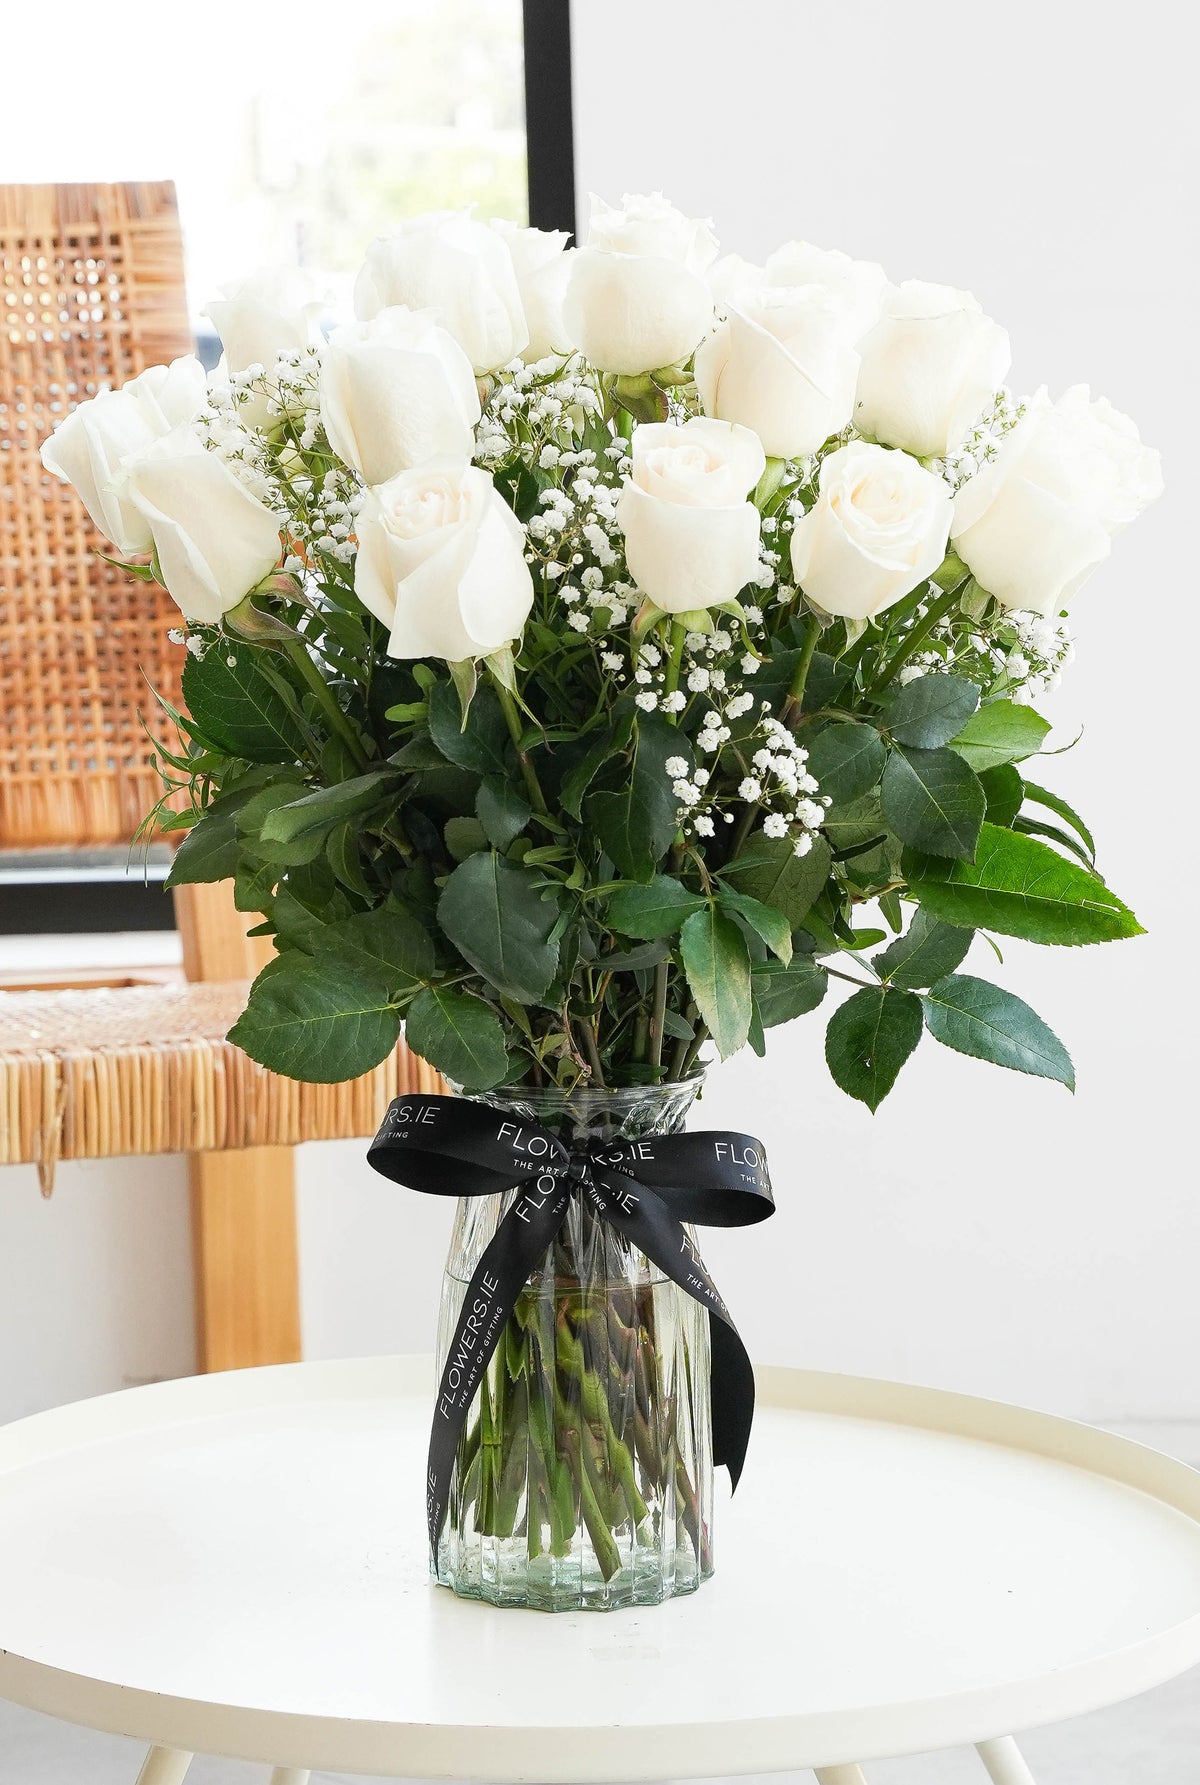 24 Long Stem White Roses in a vase